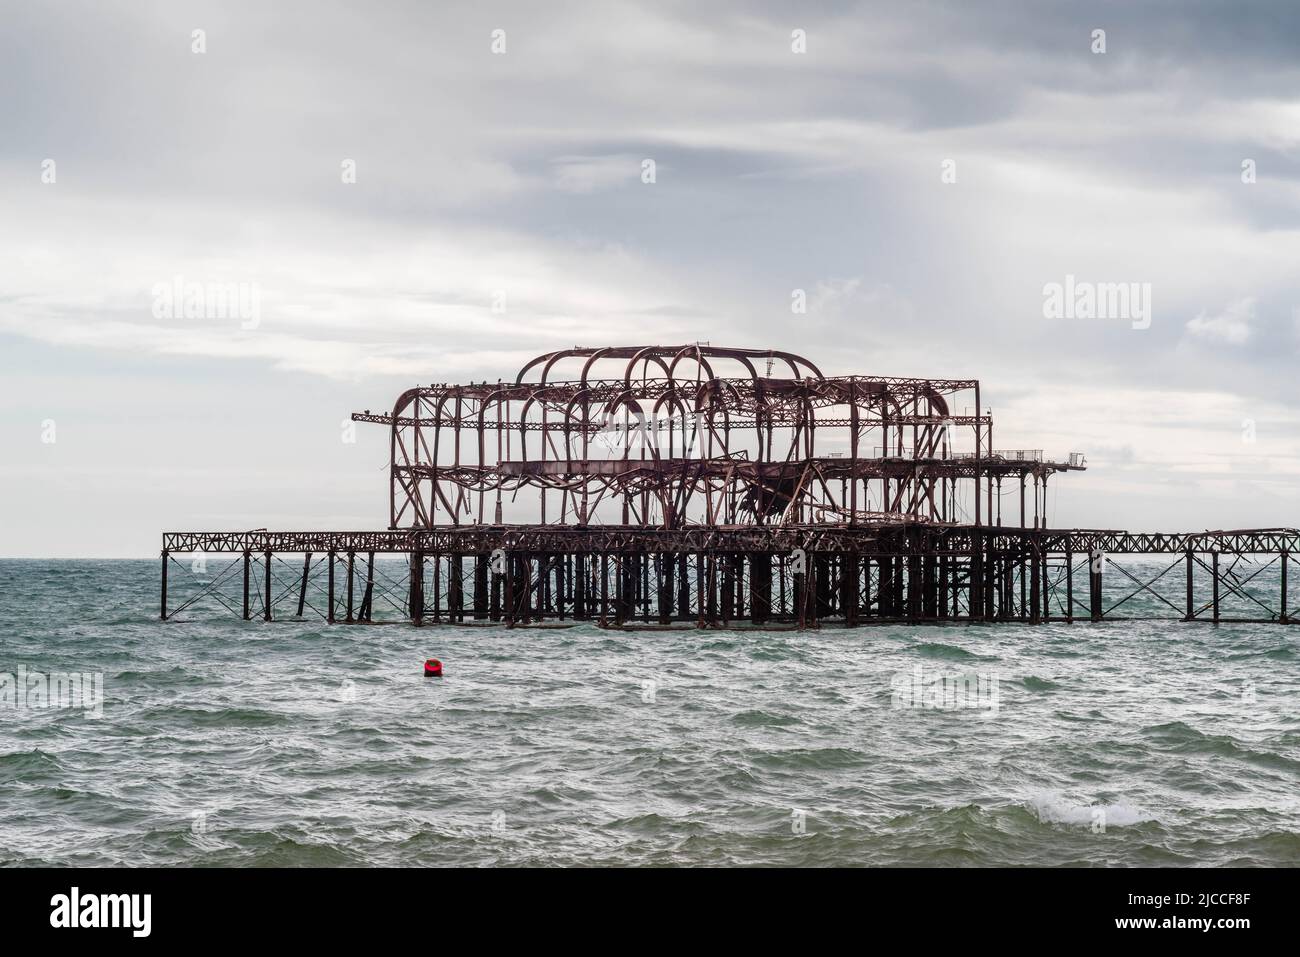 Les vestiges de West Pier à Brighton pendant la tempête, Brighton Beach, East Sussex, Angleterre, Royaume-Uni Banque D'Images